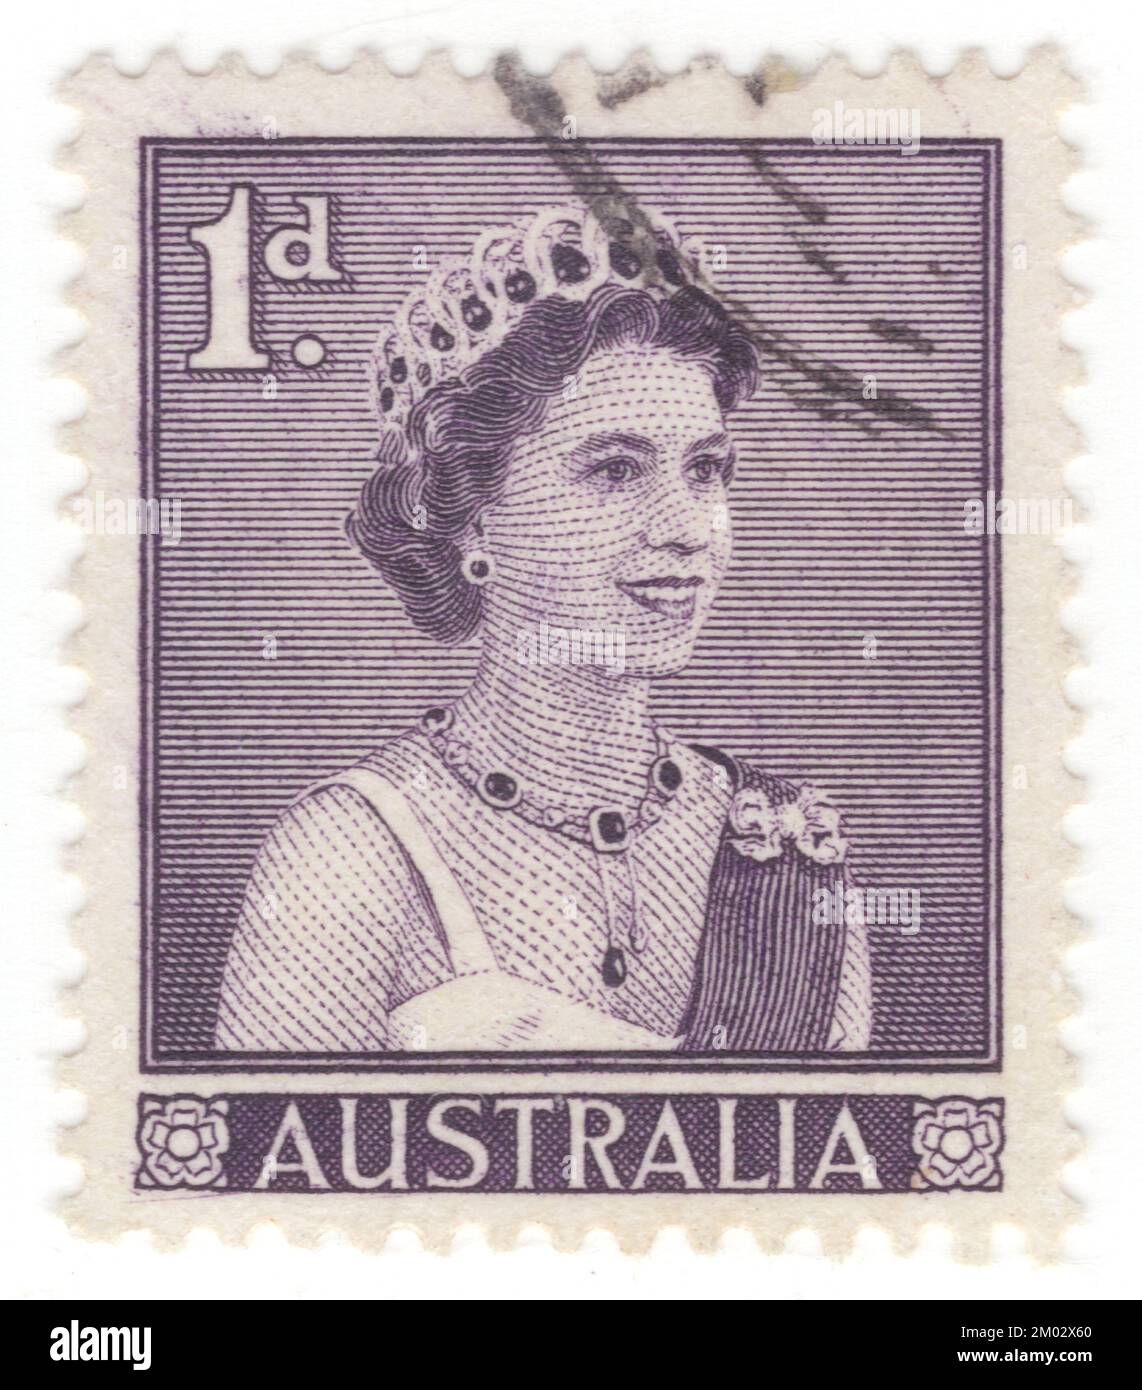 AUSTRALIEN — 1959. Februar 2: Ein 1 Pence langer, violetter Briefmarken, der Porträts von Königin Elizabeth II., der Herrscherin Australiens, darstellt. Elizabeth II (Elizabeth Alexandra Mary) war vom 6. Februar 1952 bis zu ihrem Tod im Jahr 2022 Königin des Vereinigten Königreichs und anderer Commonwealth-Reiche. Sie war Königin der 32 souveränen Staaten während ihres Lebens und war Staatsoberhaupt von 15 Reichen zum Zeitpunkt ihres Todes. Ihre Herrschaft von 70 Jahren und 214 Tagen war die längste aller britischen Monarchen und die längste verifizierte Herrschaft aller weiblichen Monarchen in der Geschichte Stockfoto